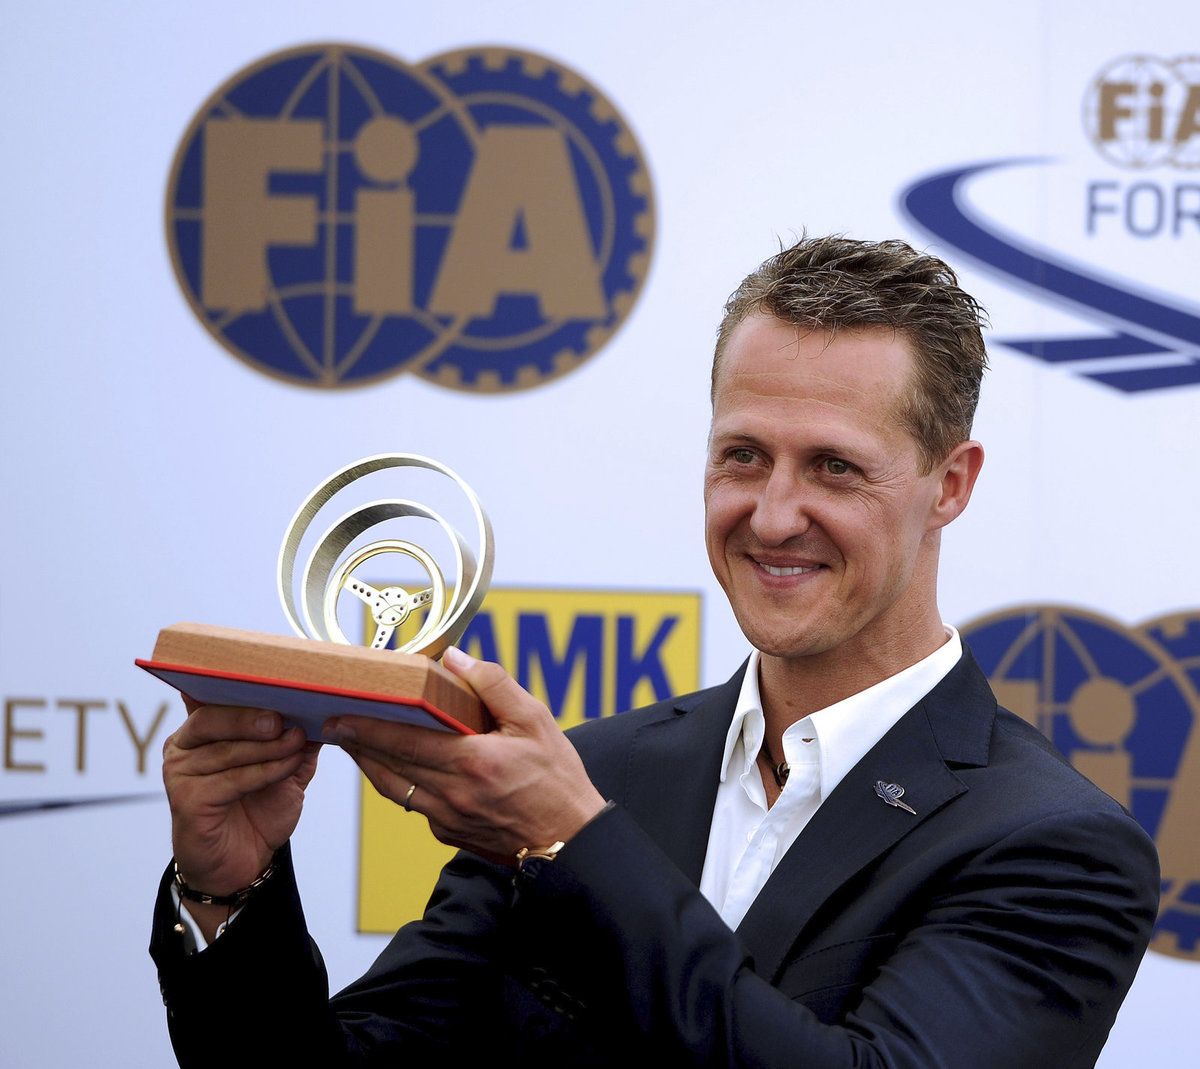 Ocenění. Před šesti lety Michael Schumacher obdržel v Praze Zlatý volant.